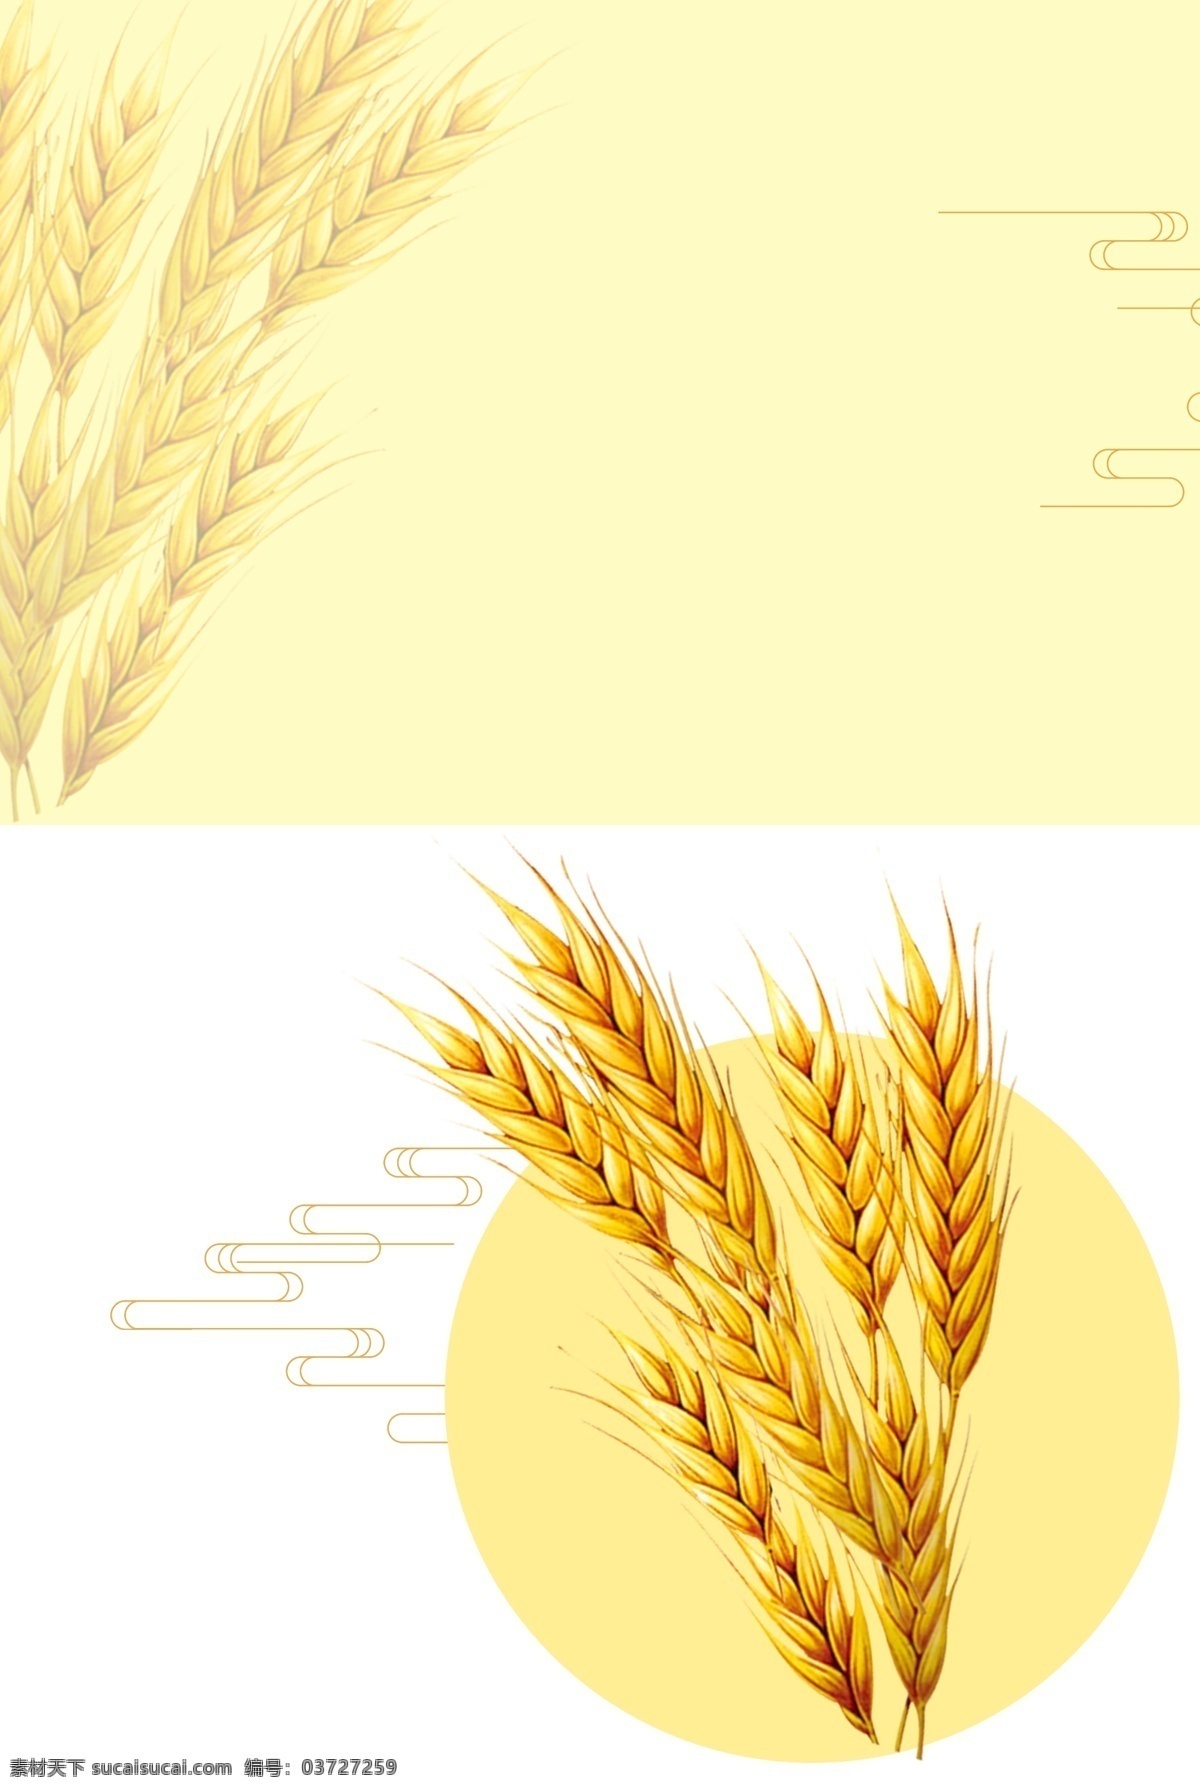 芒种简约背景 简约 手绘 芒种 温馨 文艺 小麦 黄色 祥云线条